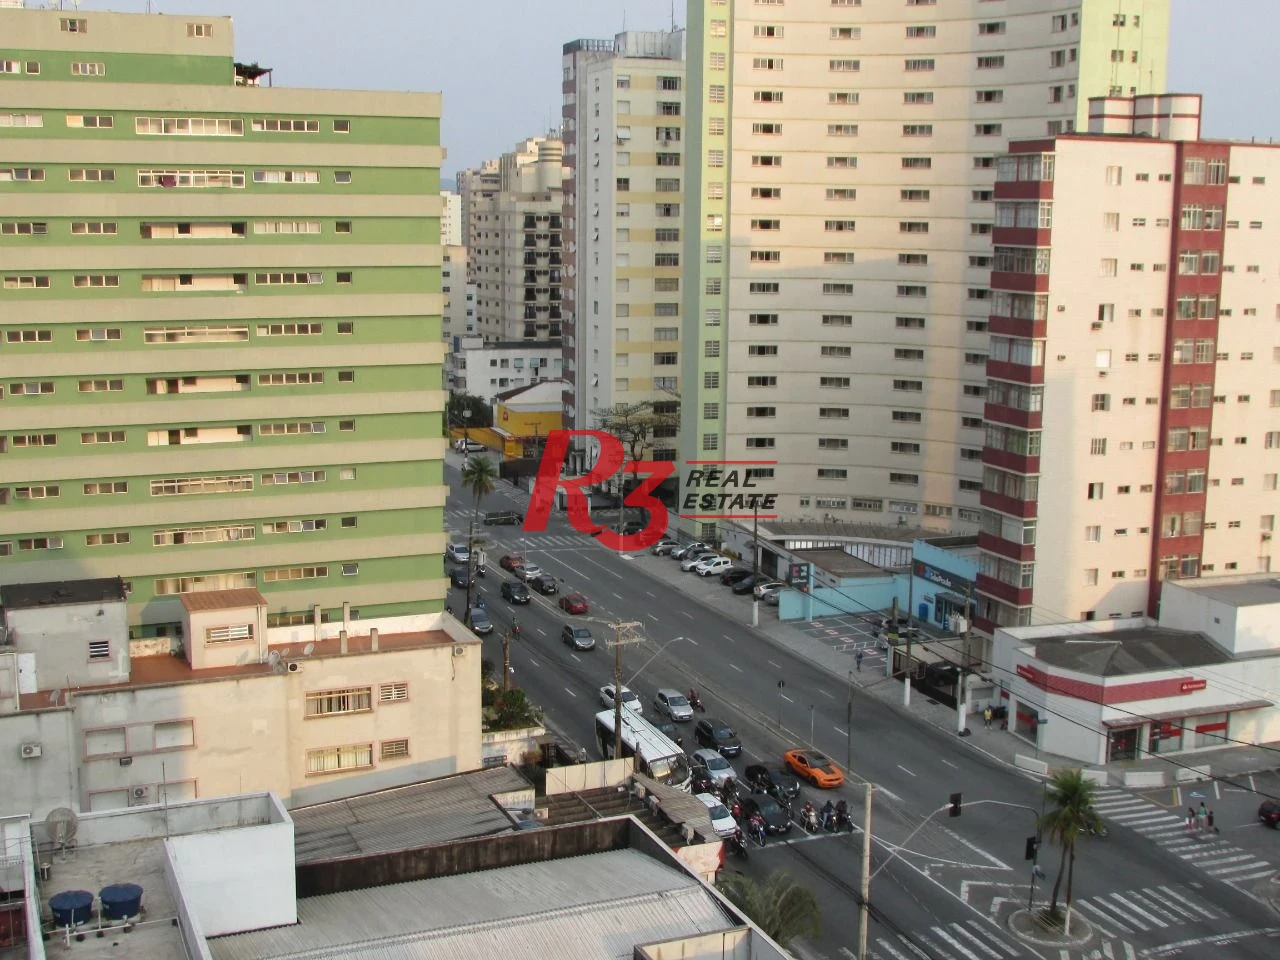 Apartamento com 2 dormitórios à venda, 117 m² por R$ 500.000,00 - Boa Vista - São Vicente/SP